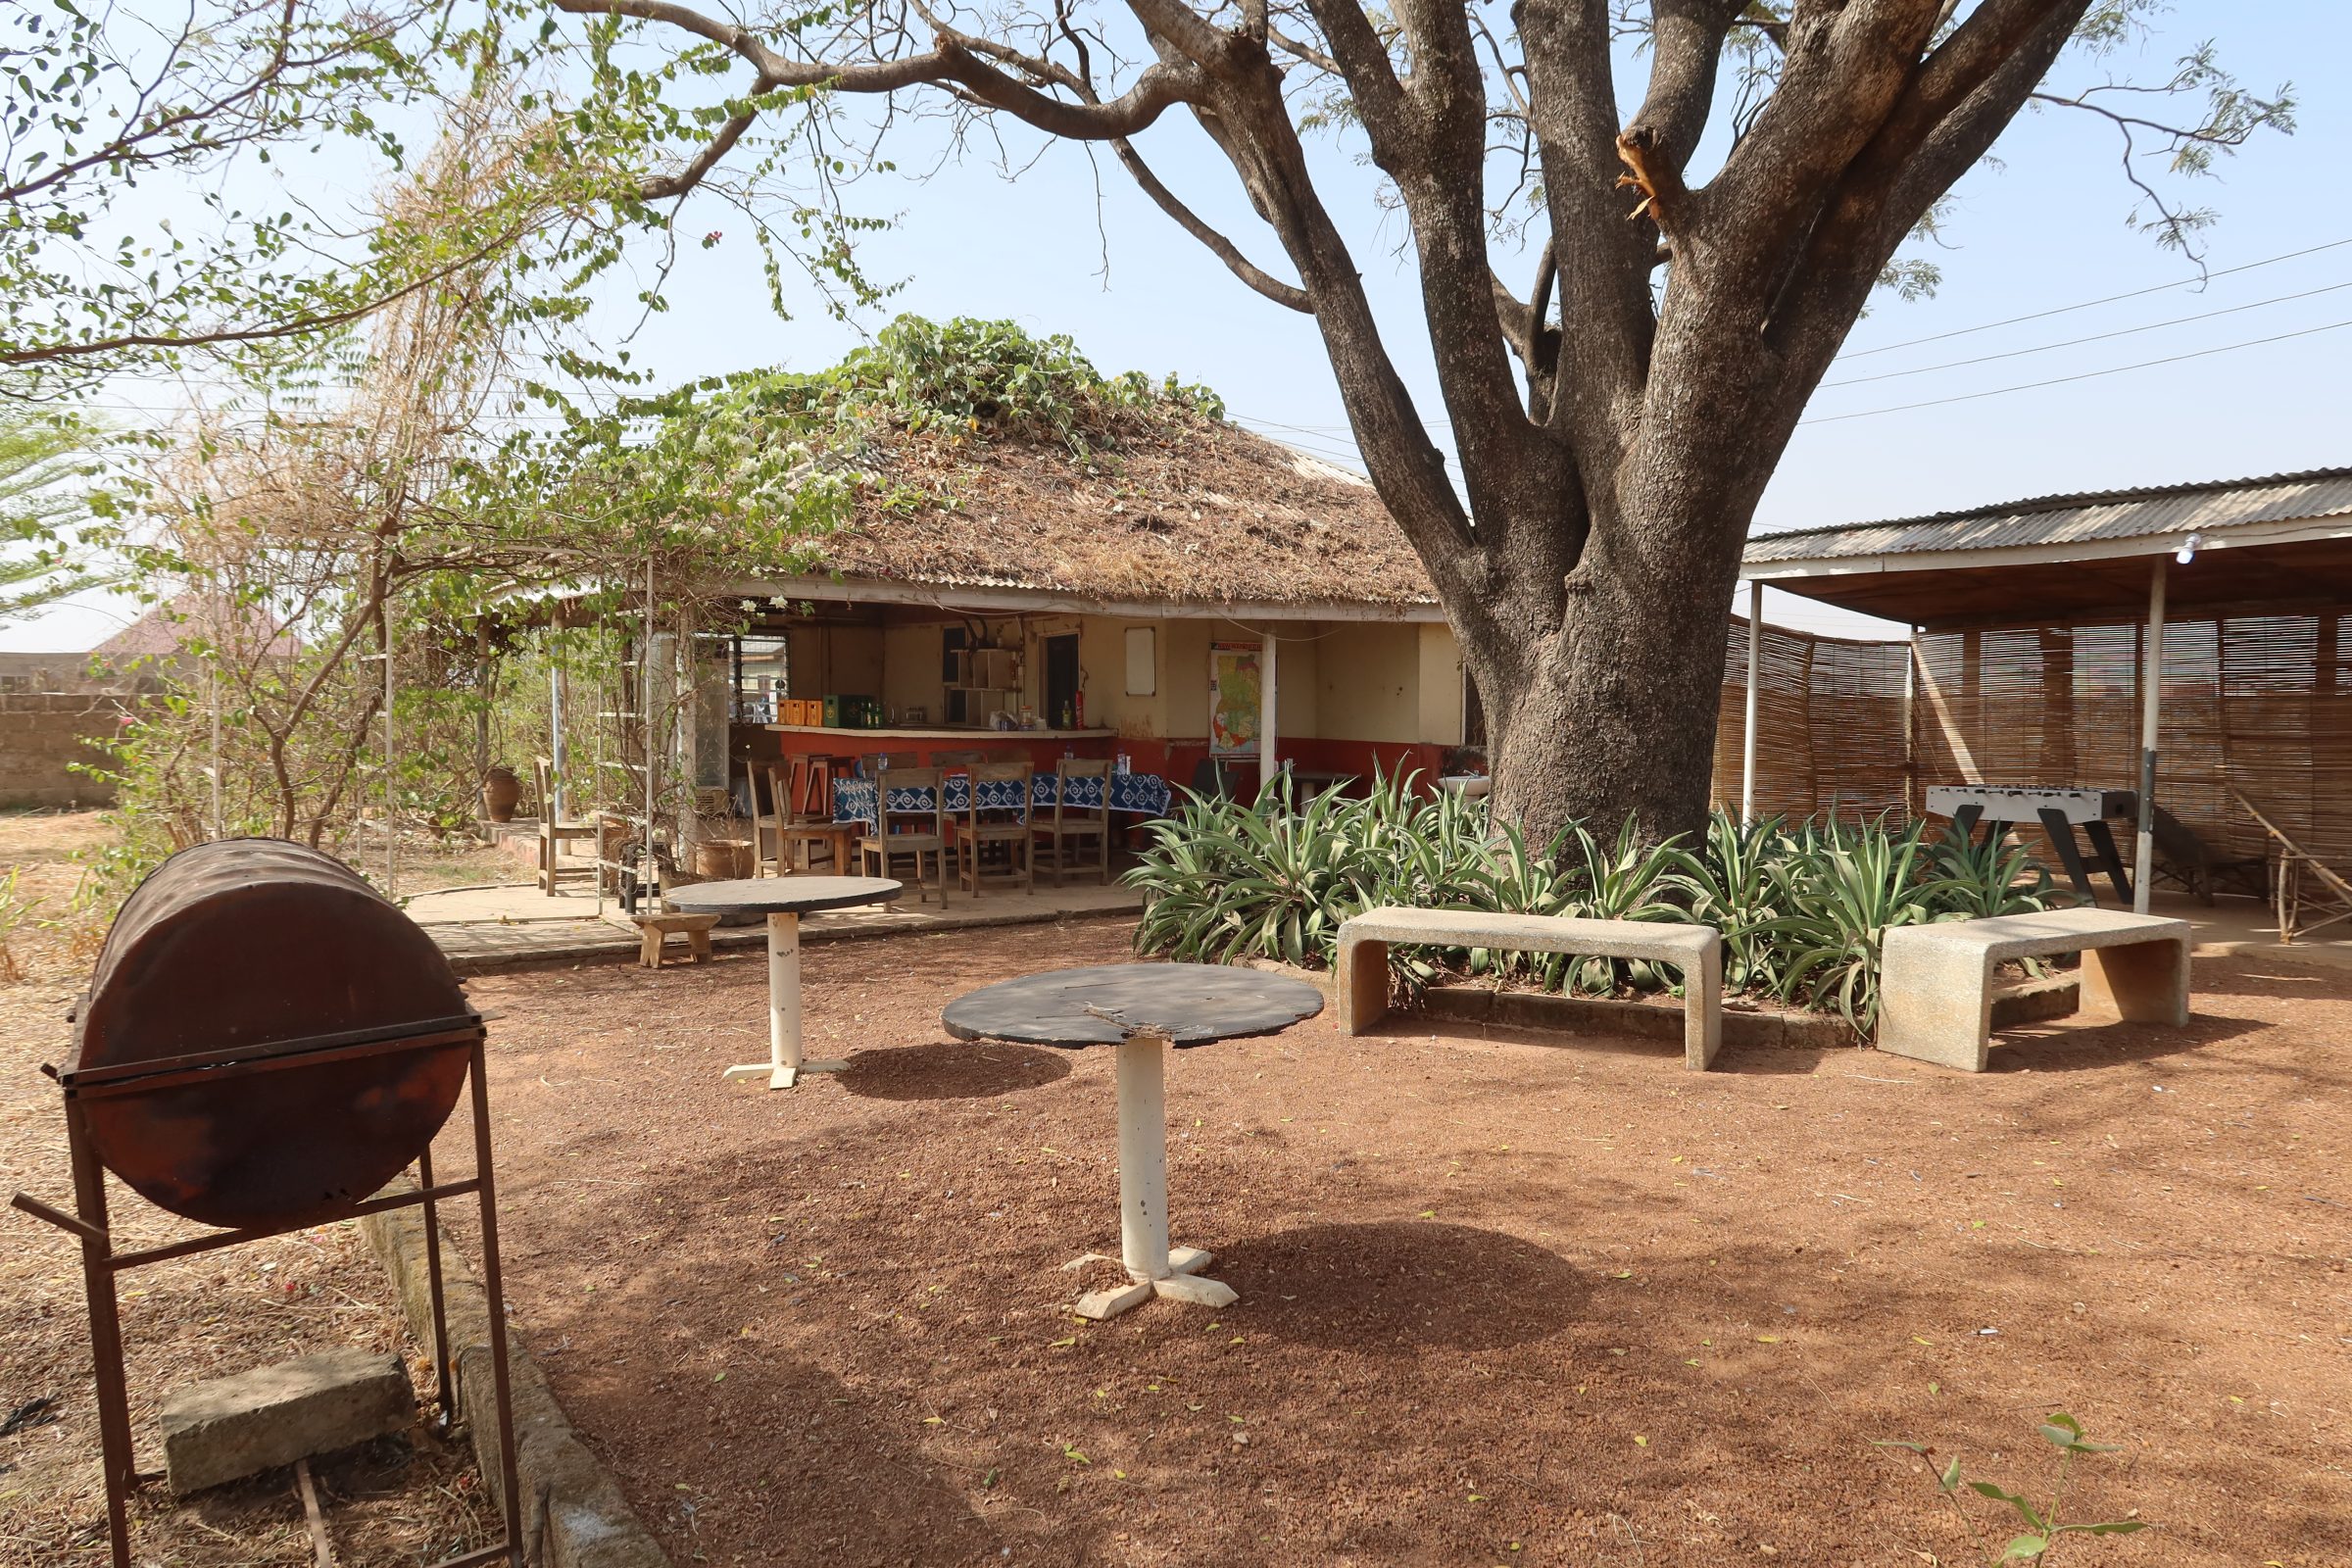 Ein weiterer Teil der Dawadawa-Lodge in Tamale, Ghana.